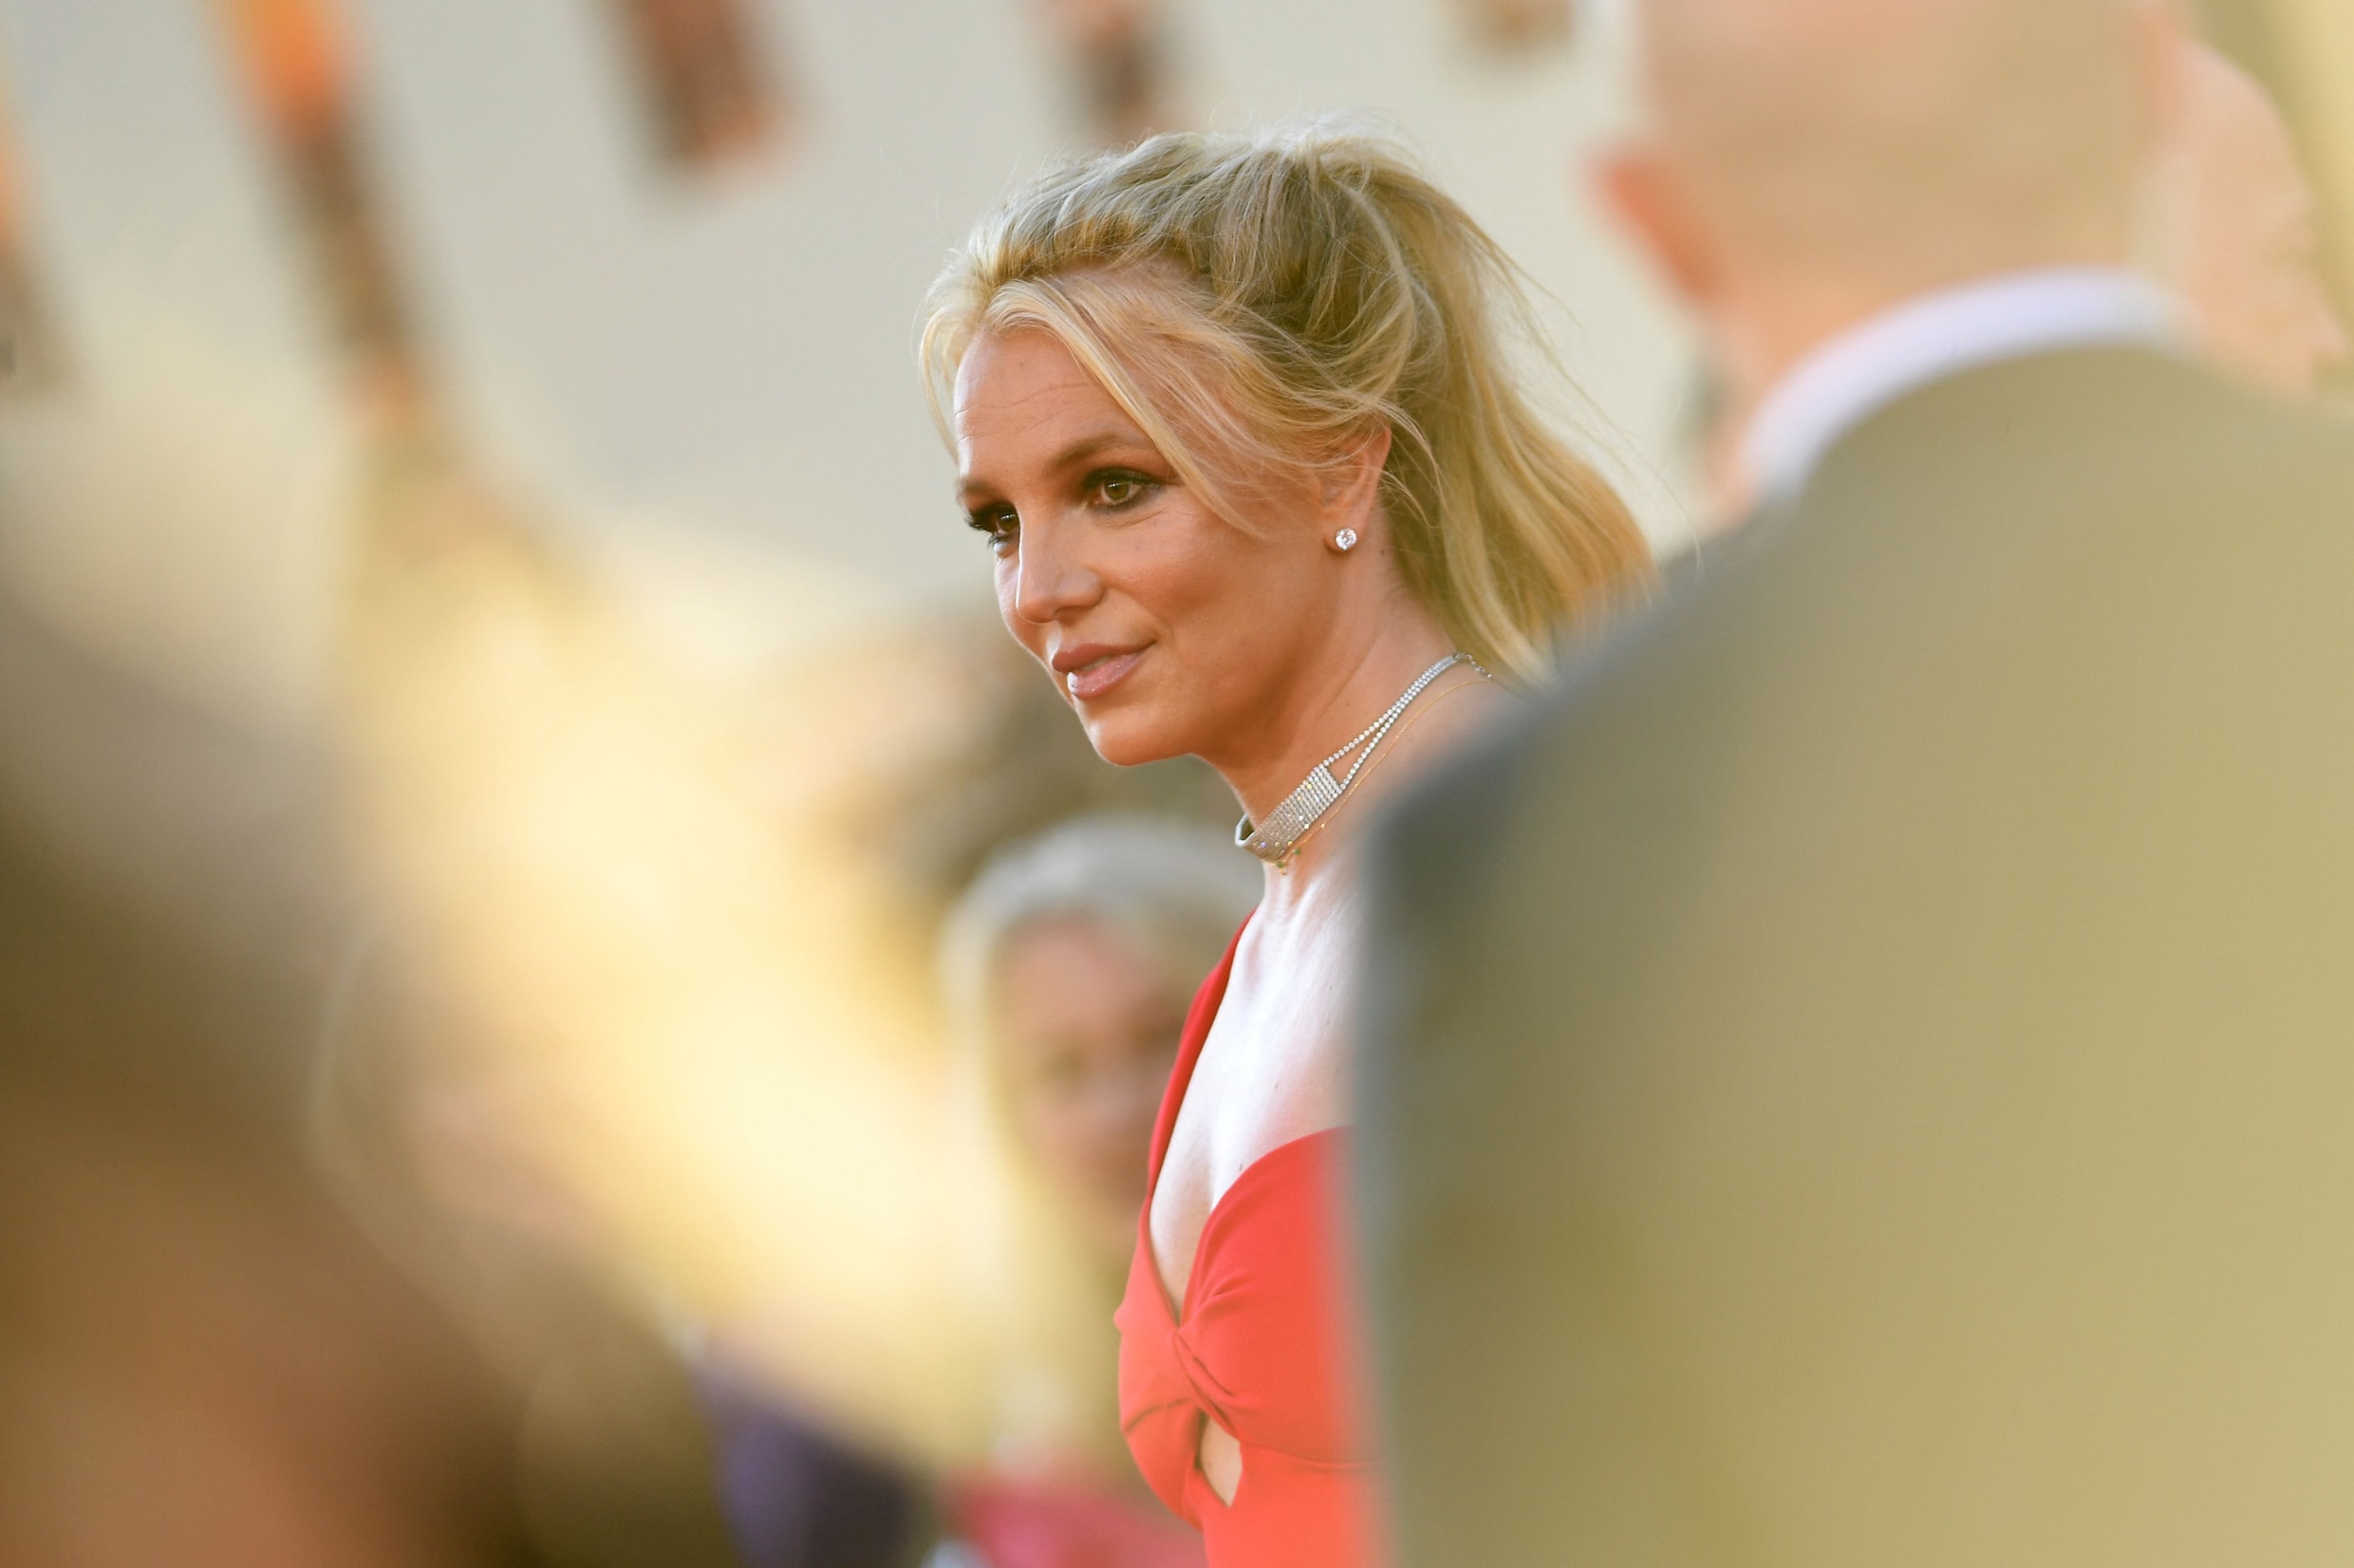 Vader van Britney Spears wil zich terugtrekken als voogd: ‘Dit is een grote overwinning’